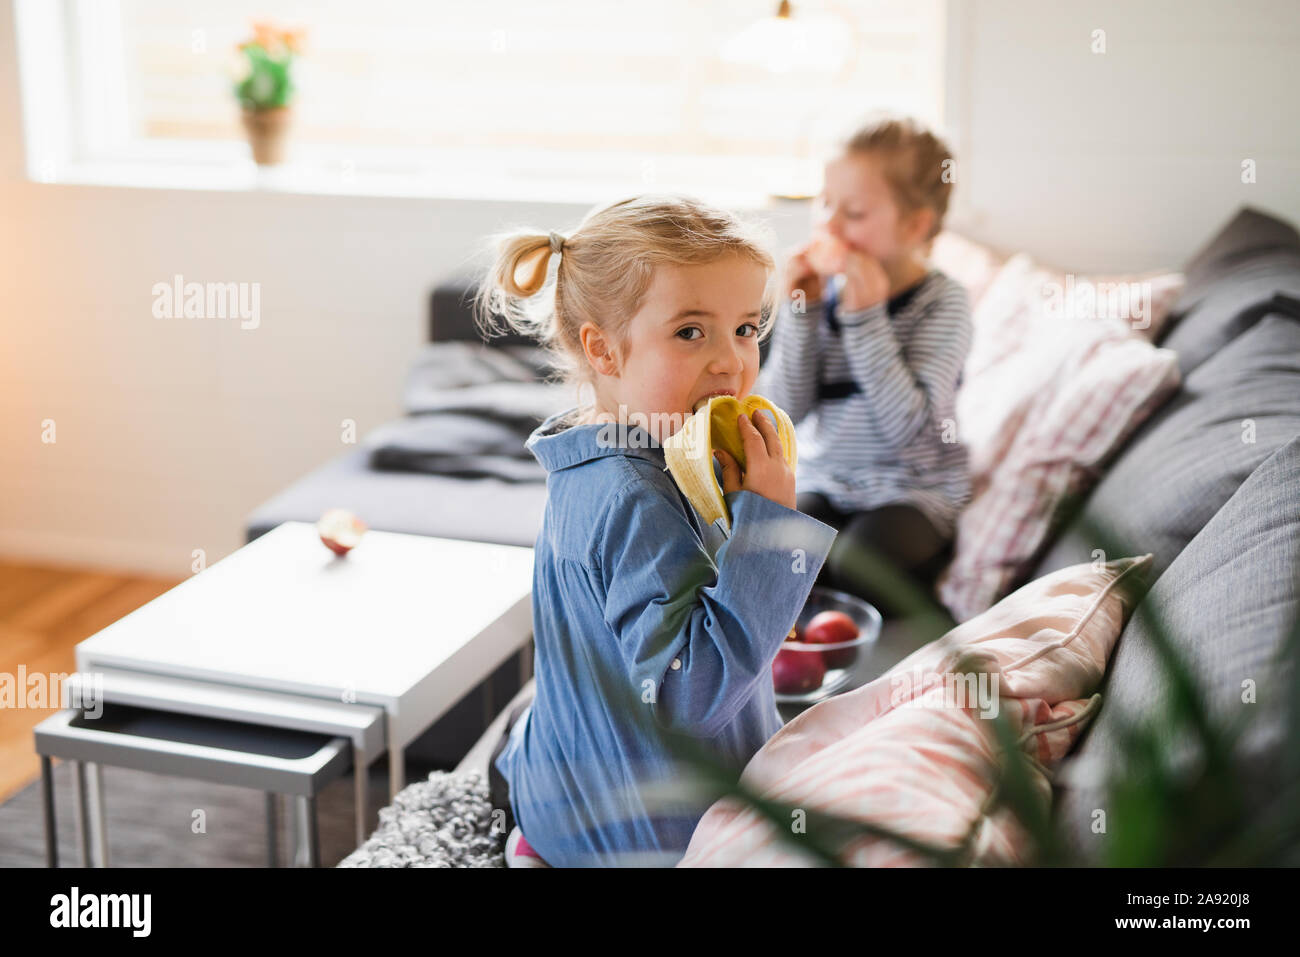 Girl eating banana on sofa Stock Photo